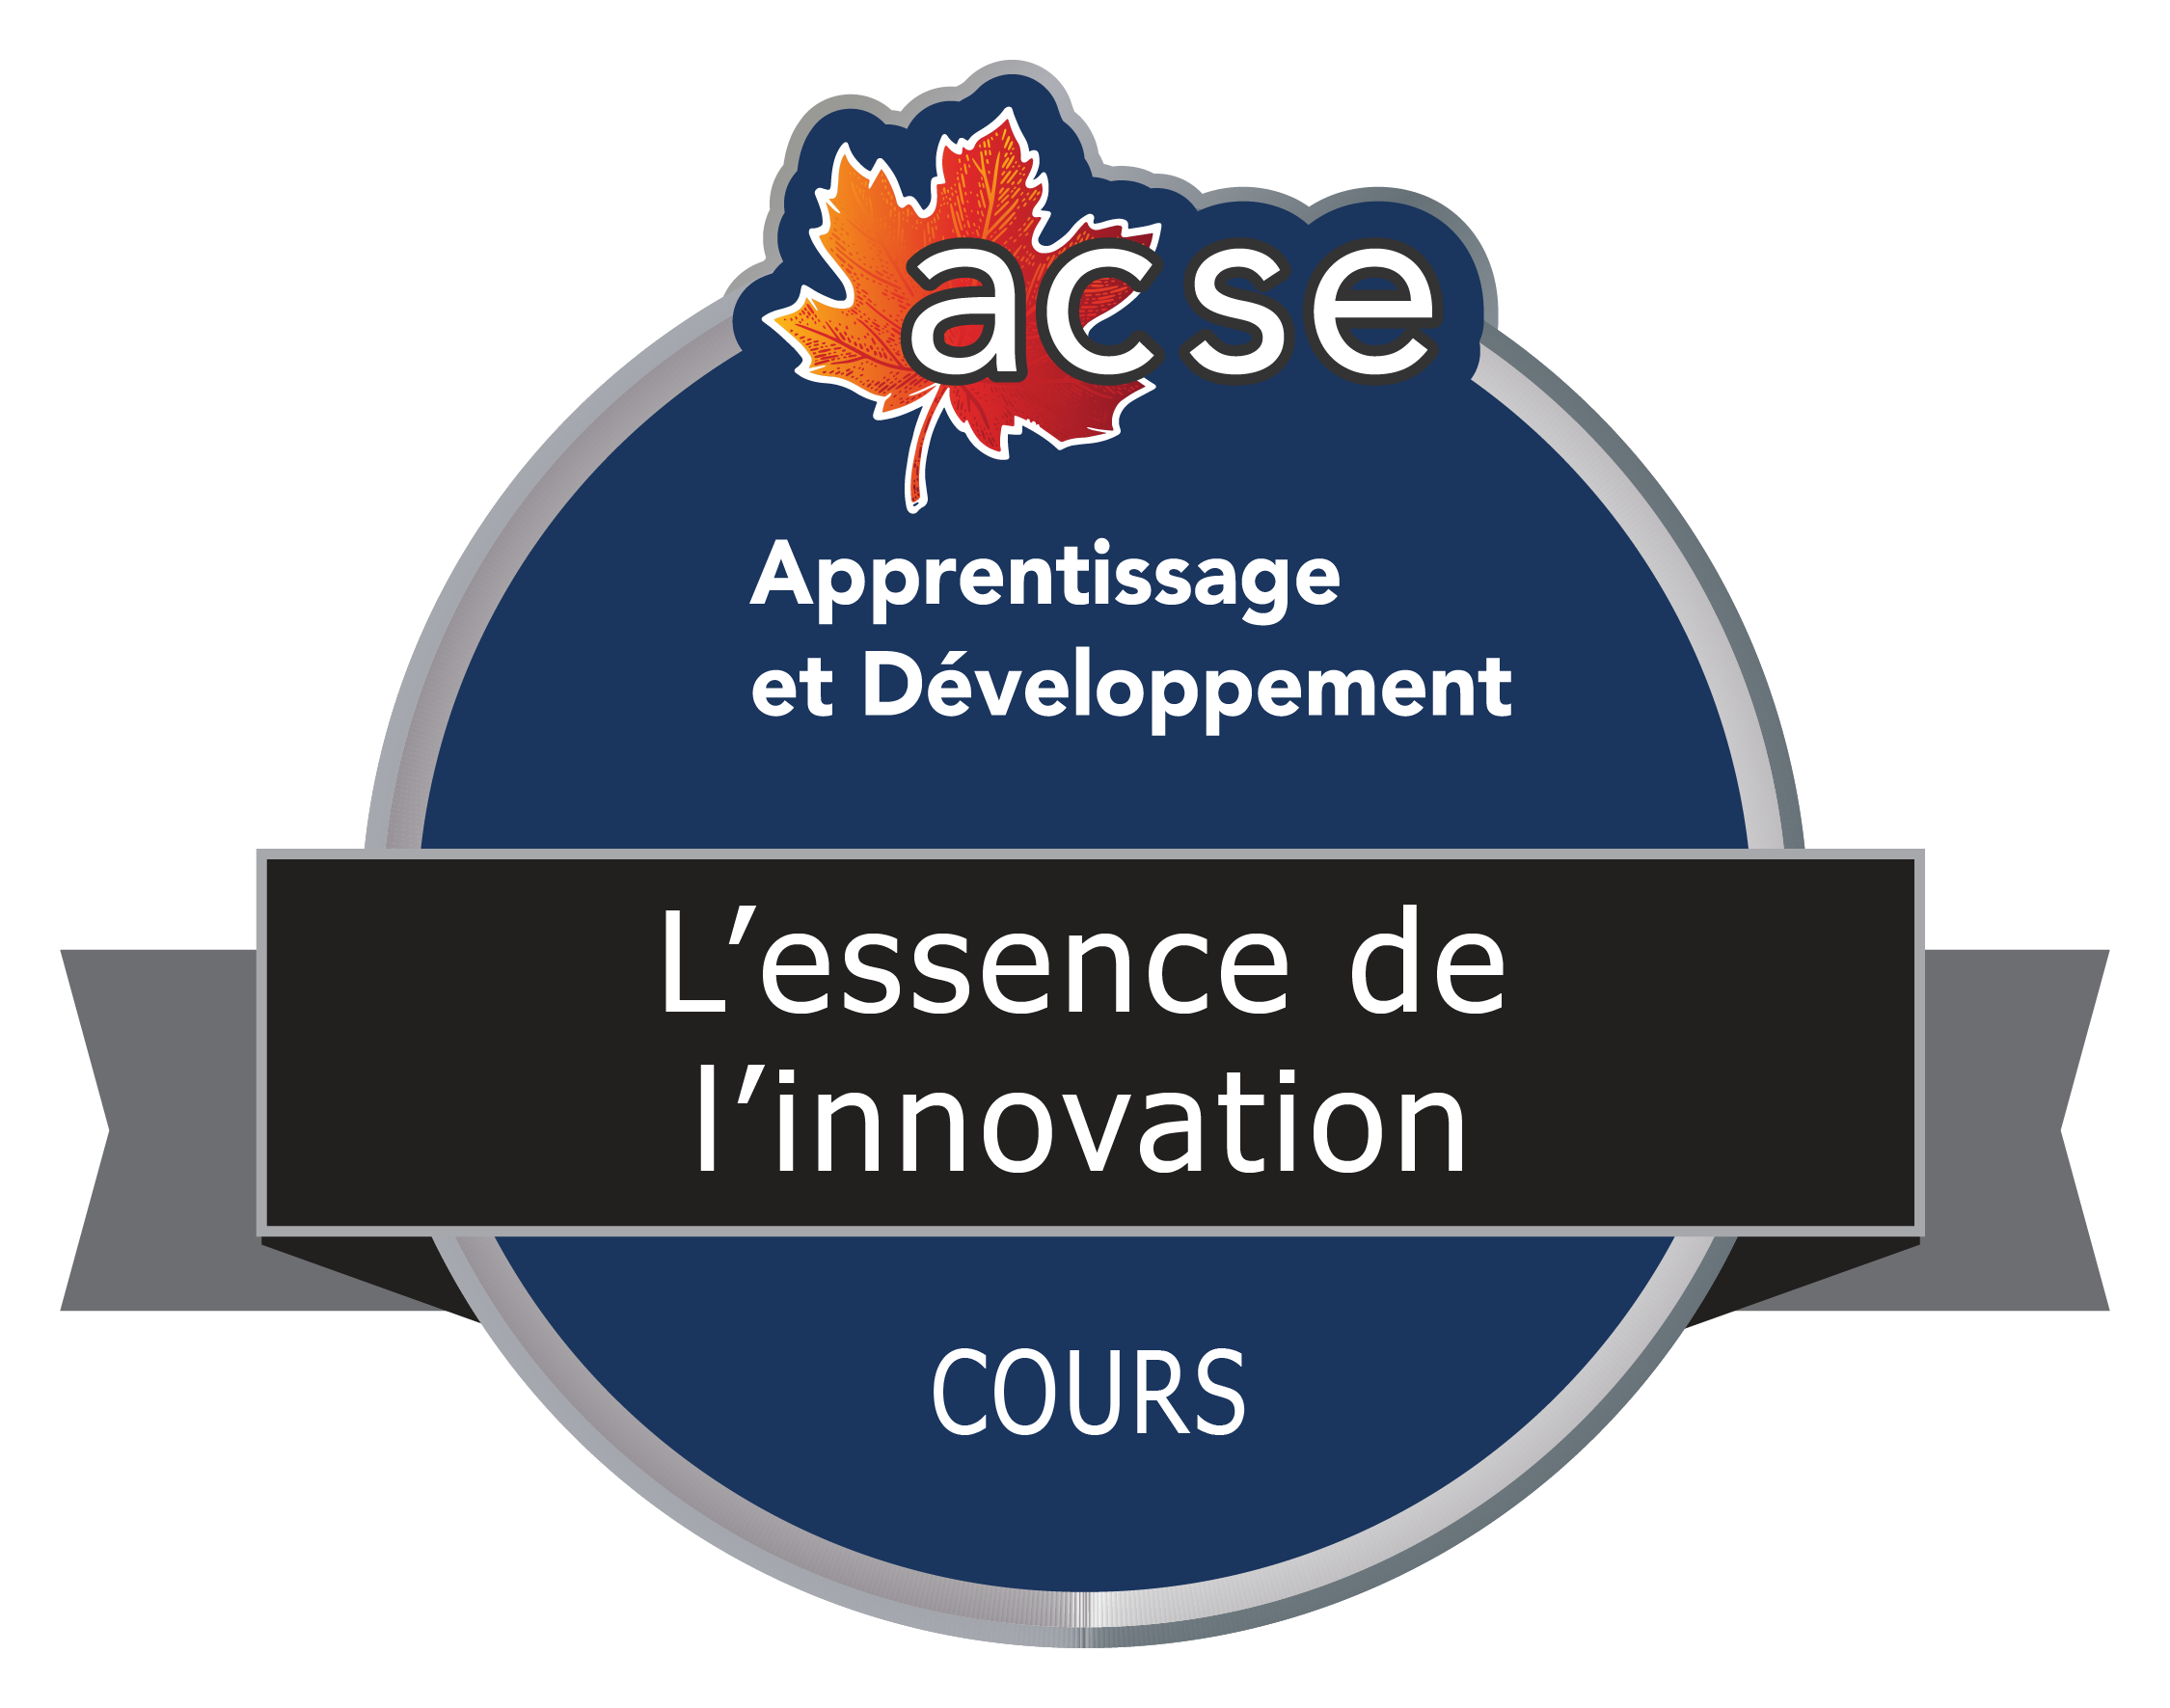 Le badge numérique du cours intitulé L’essence de l’innovation. Un cercle avec le logo de l'ACSE, une feuille d'érable rouge en haut et le nom du cours sur une bannière au milieu.  